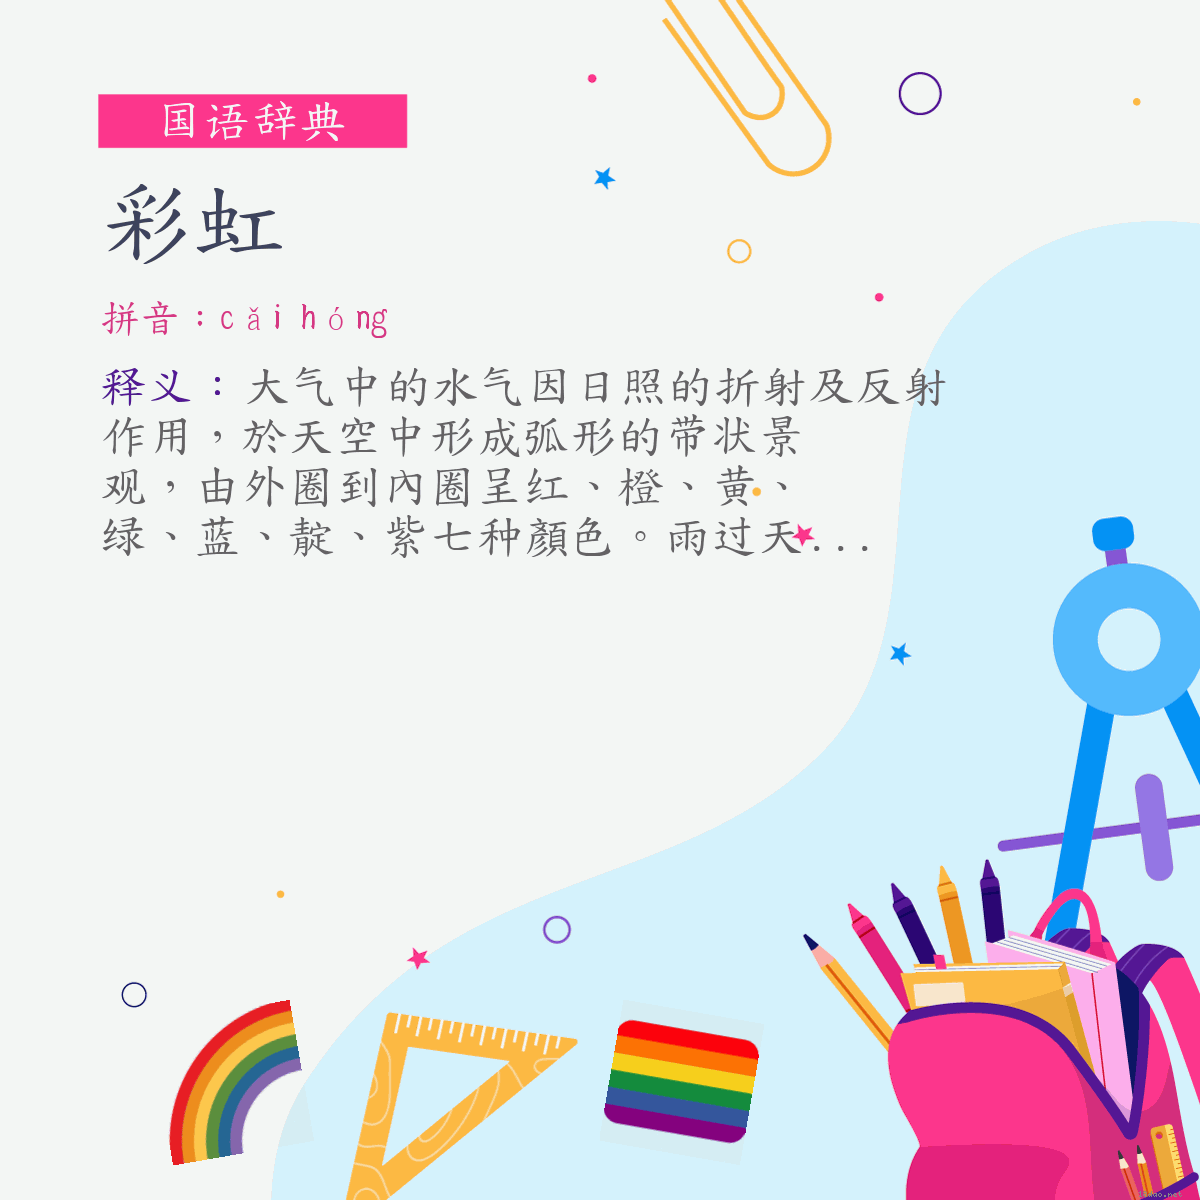 词:彩虹 (注音:ㄘㄞˇ　ㄏㄨㄥˊ)